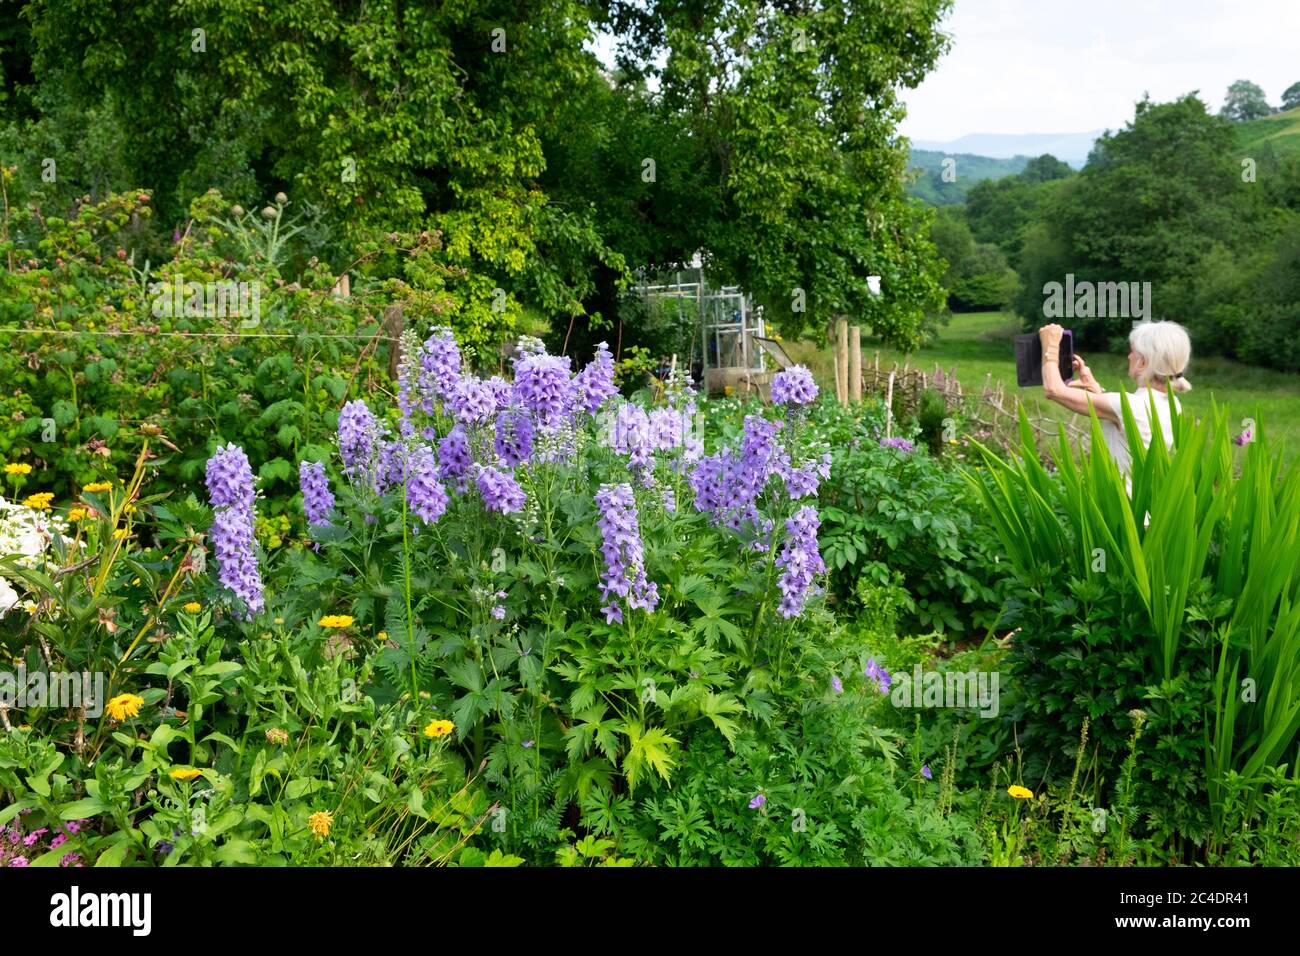 Femme âgée photographiant un jardin d'été avec des delphiniums bleus avec une tablette numérique ipad dans la campagne Carmarthenshire pays de Galles Royaume-Uni KATHY DEWITT Banque D'Images